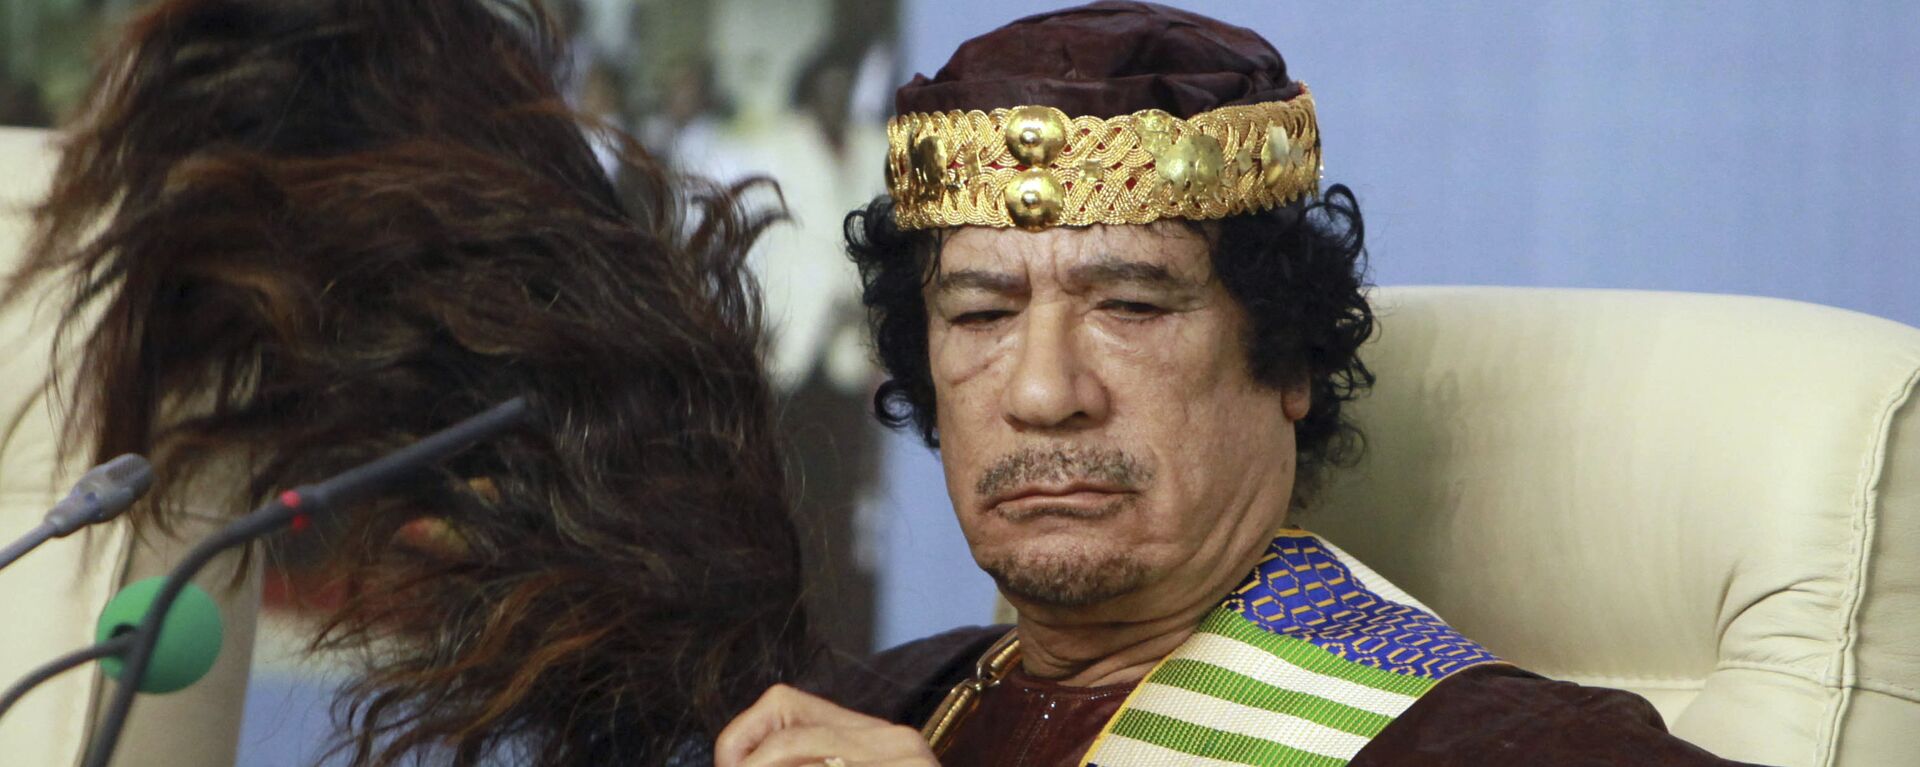 Bivši libijski lider Muamer Gadafi - Sputnik Srbija, 1920, 06.09.2021